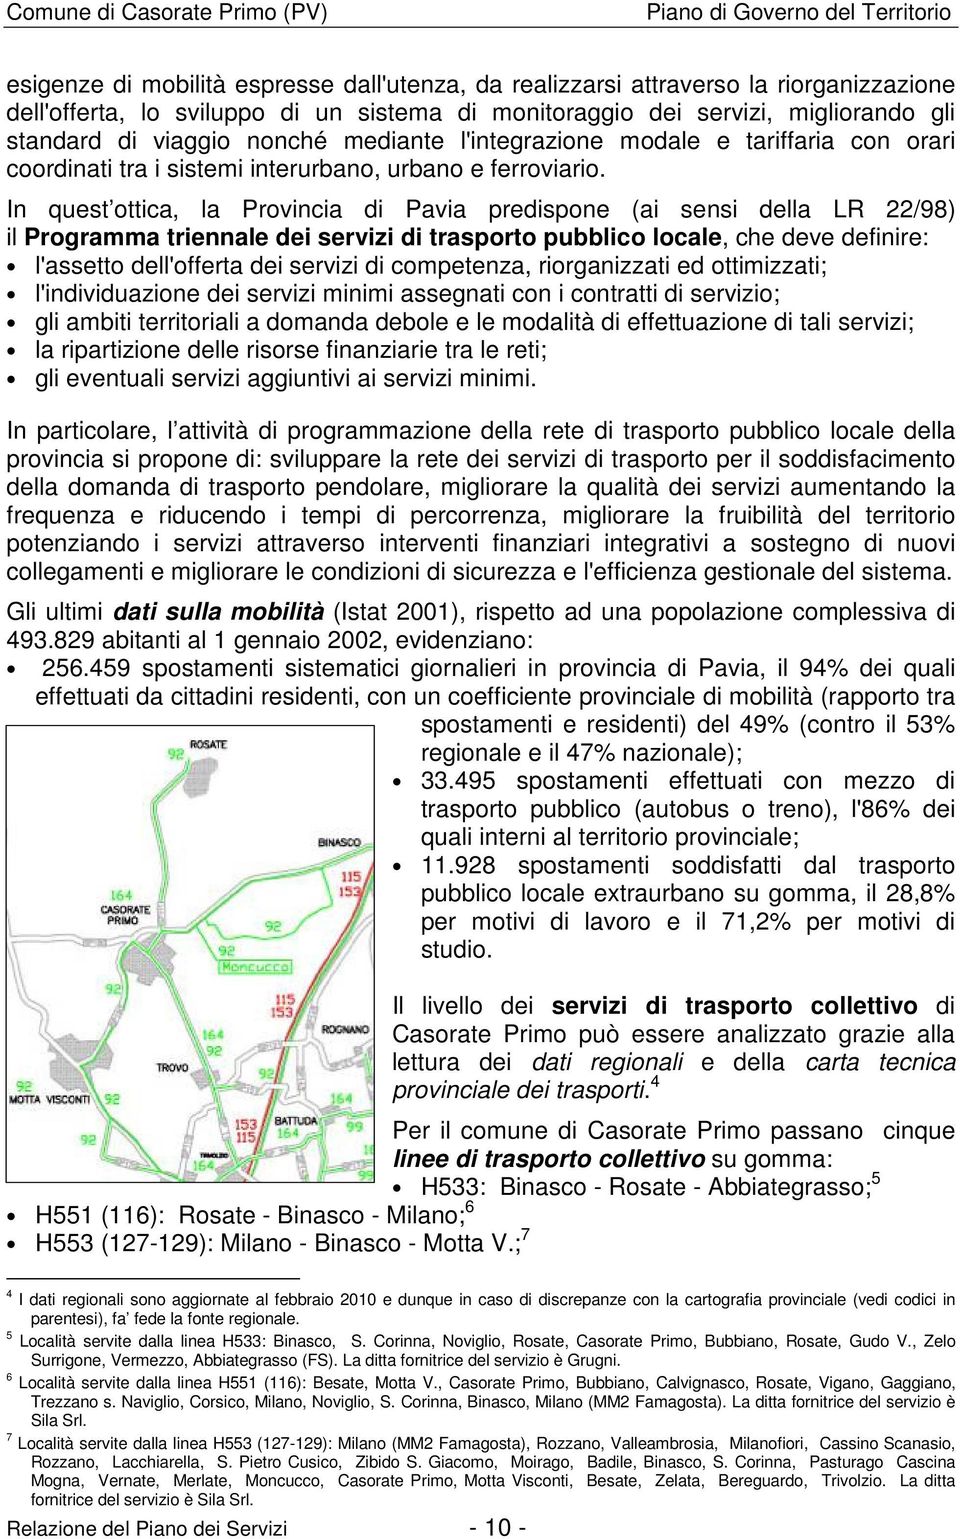 In quest ottica, la Provincia di Pavia predispone (ai sensi della LR 22/98) il Programma triennale dei servizi di trasporto pubblico locale, che deve definire: l'assetto dell'offerta dei servizi di